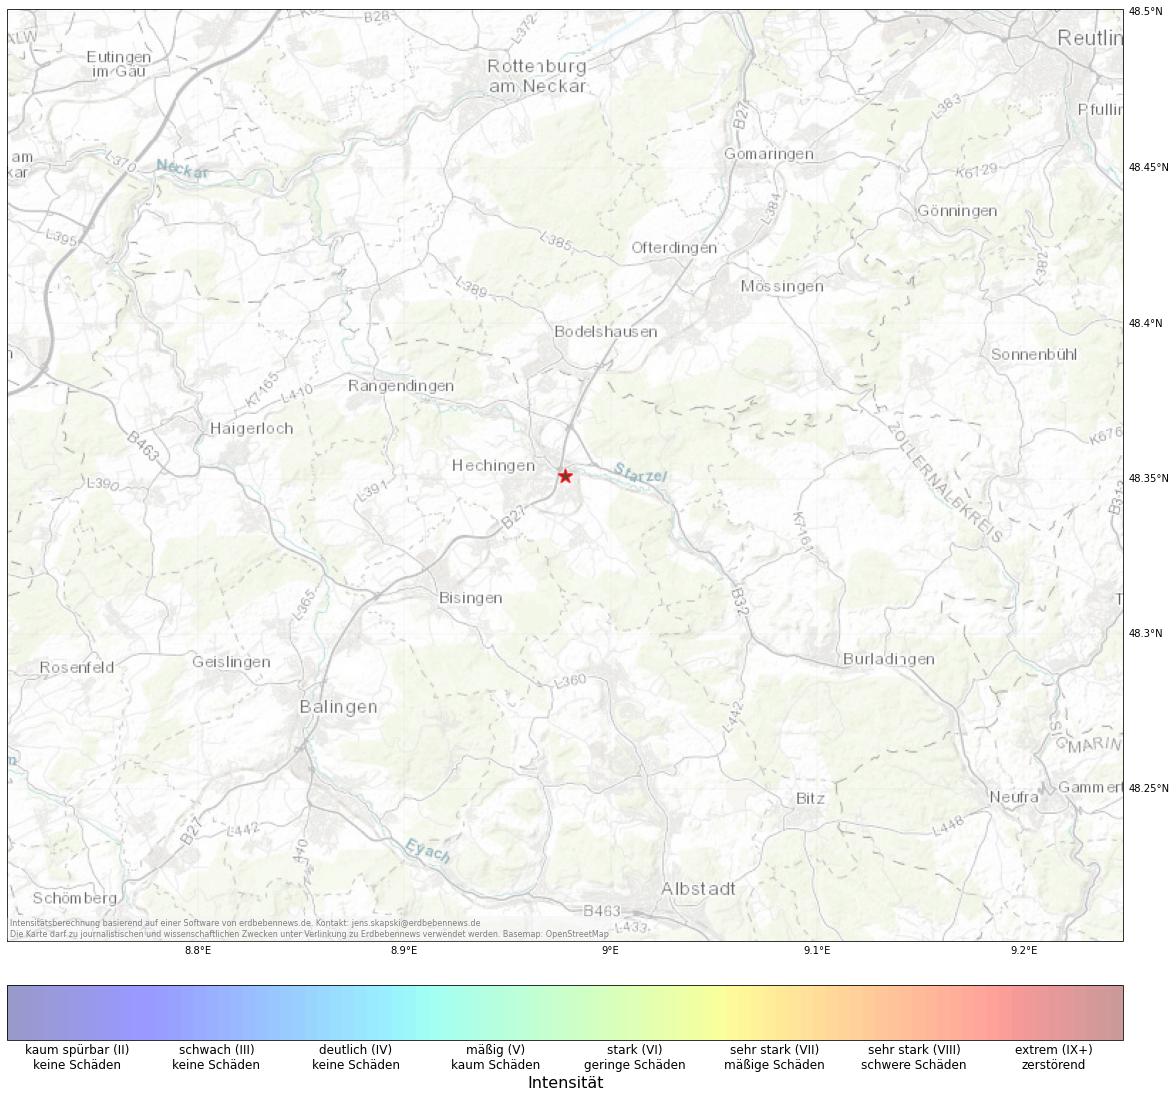 Berechnete Intensität (ShakeMap) des Erdbebens der Stärke 1.3 am 08. December, 06:34 in Deutschland